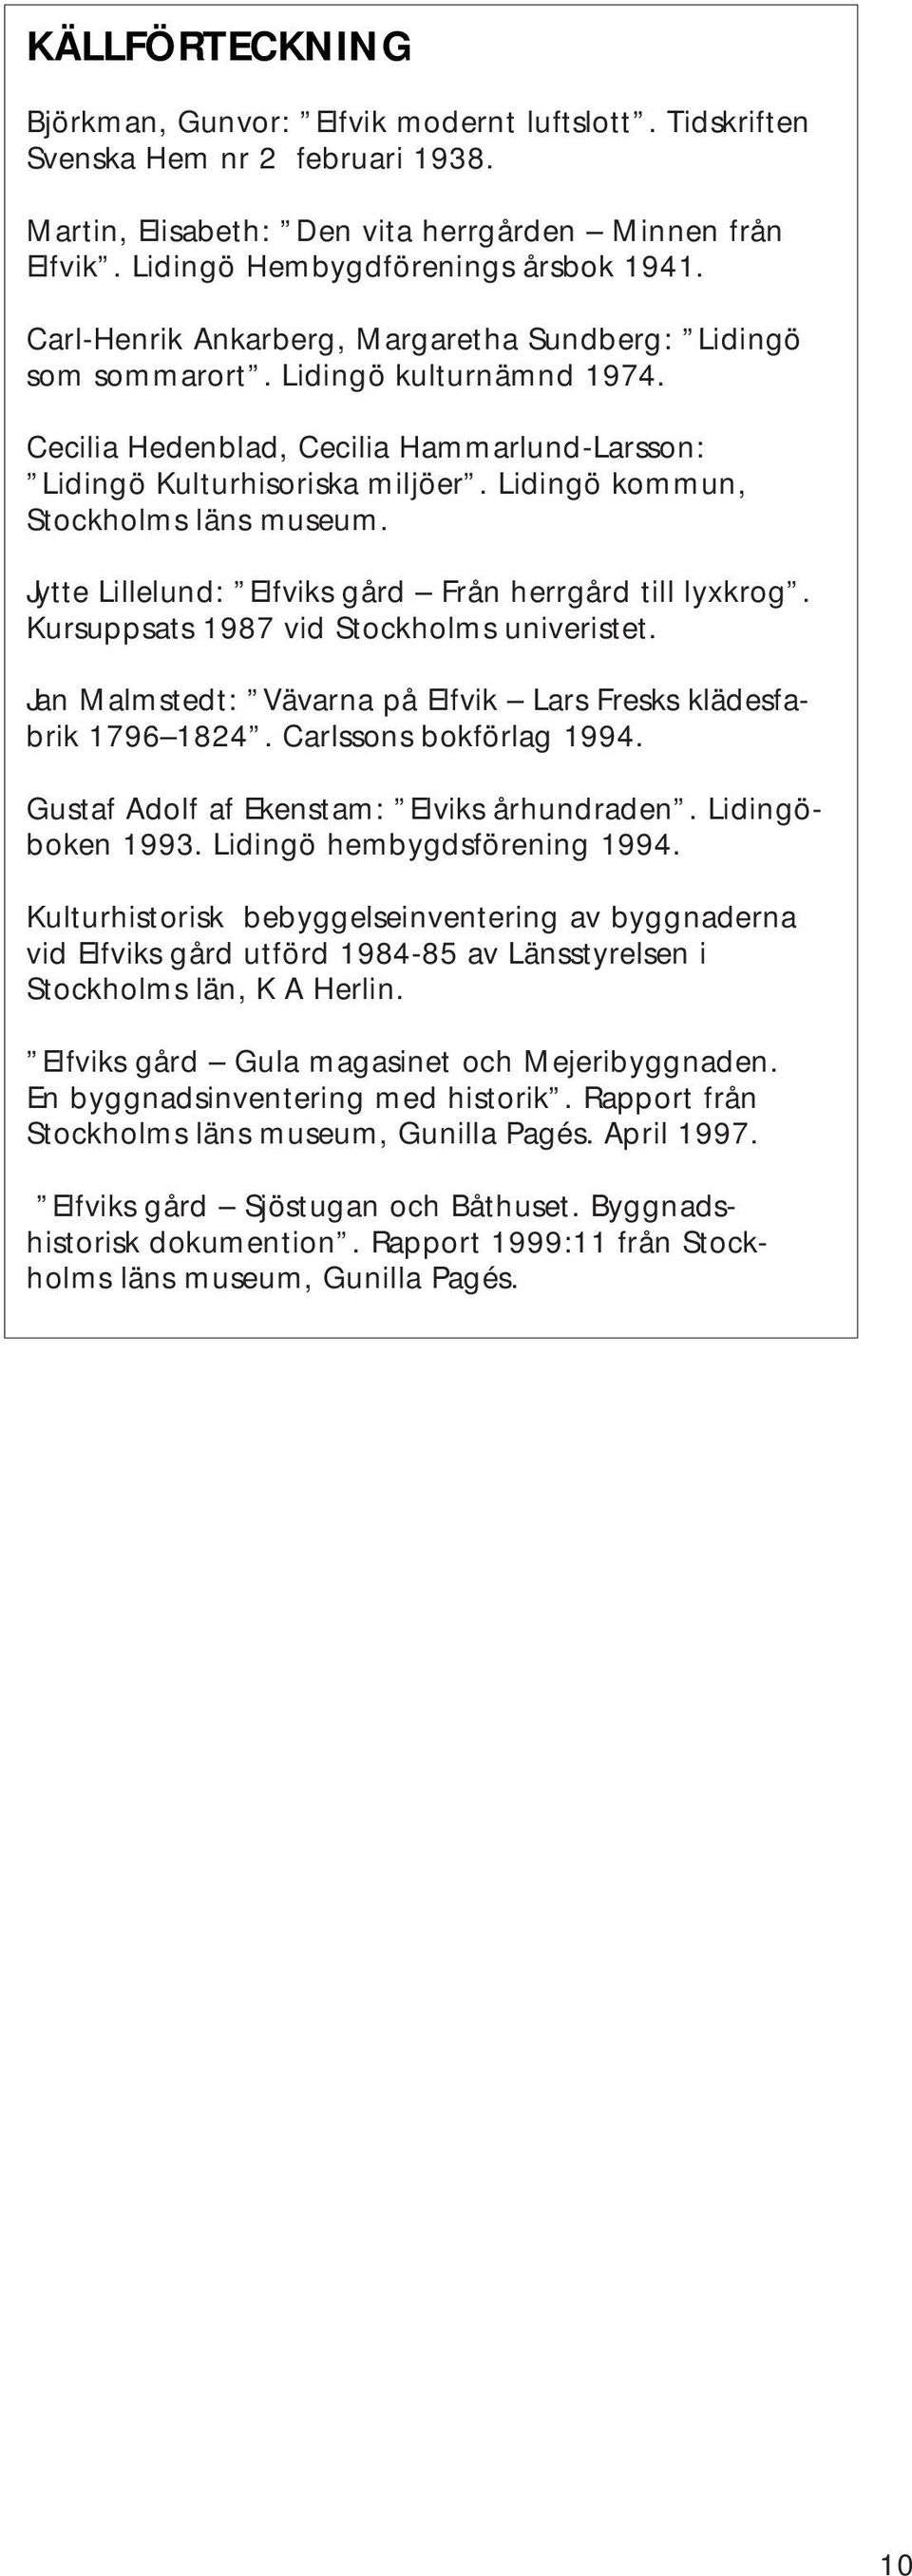 Lidingö kommun, Stockholms läns museum. Jytte Lillelund: Elfviks gård Från herrgård till lyxkrog. Kursuppsats 1987 vid Stockholms univeristet.